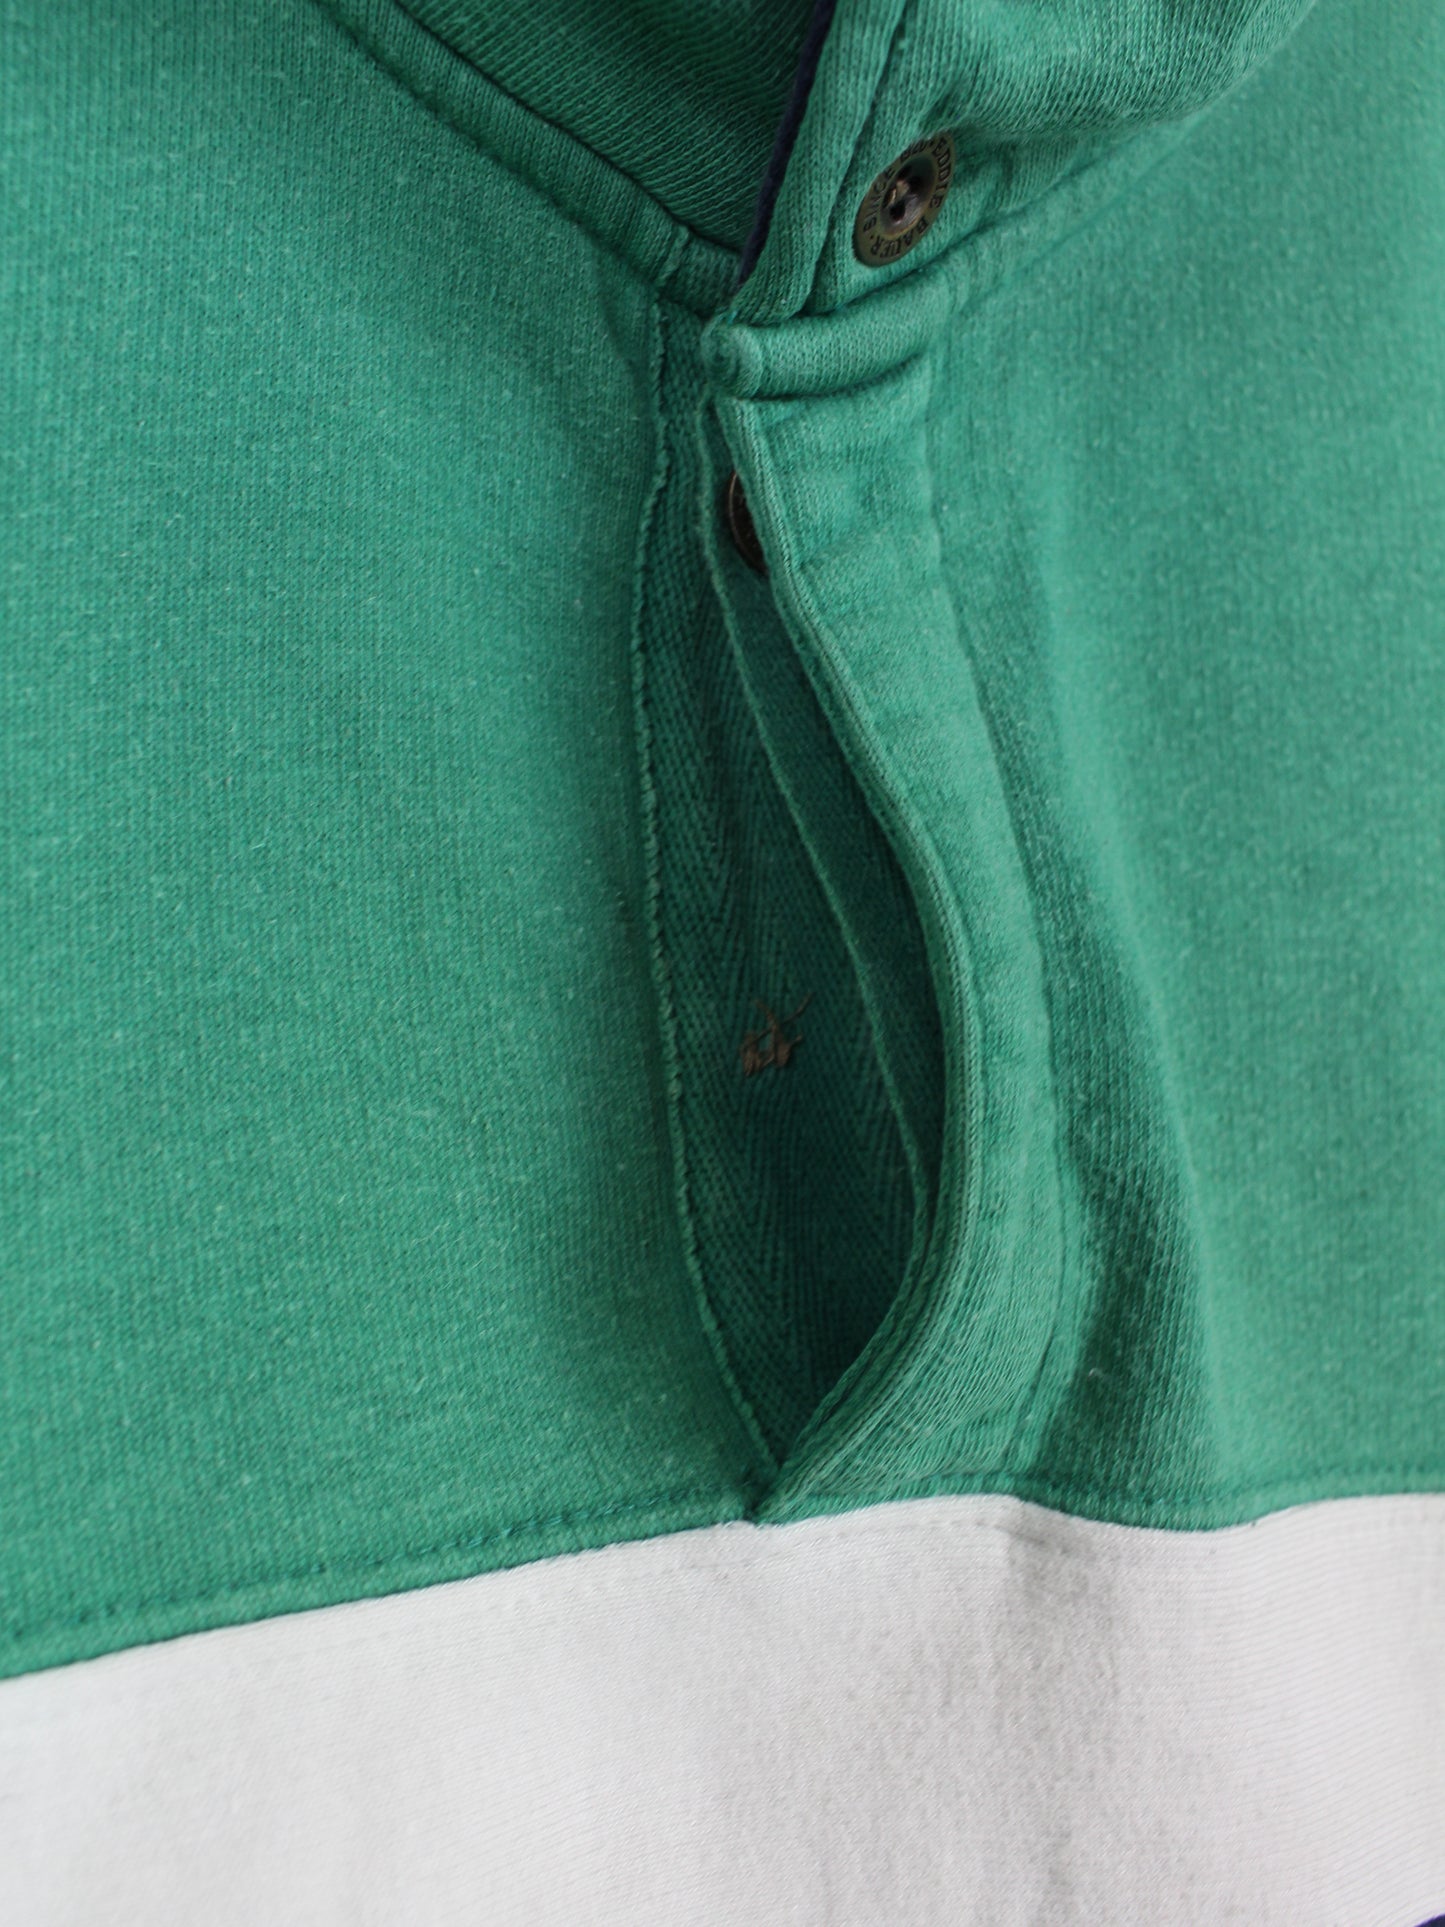 Eddie Bauer Sweater Green XL